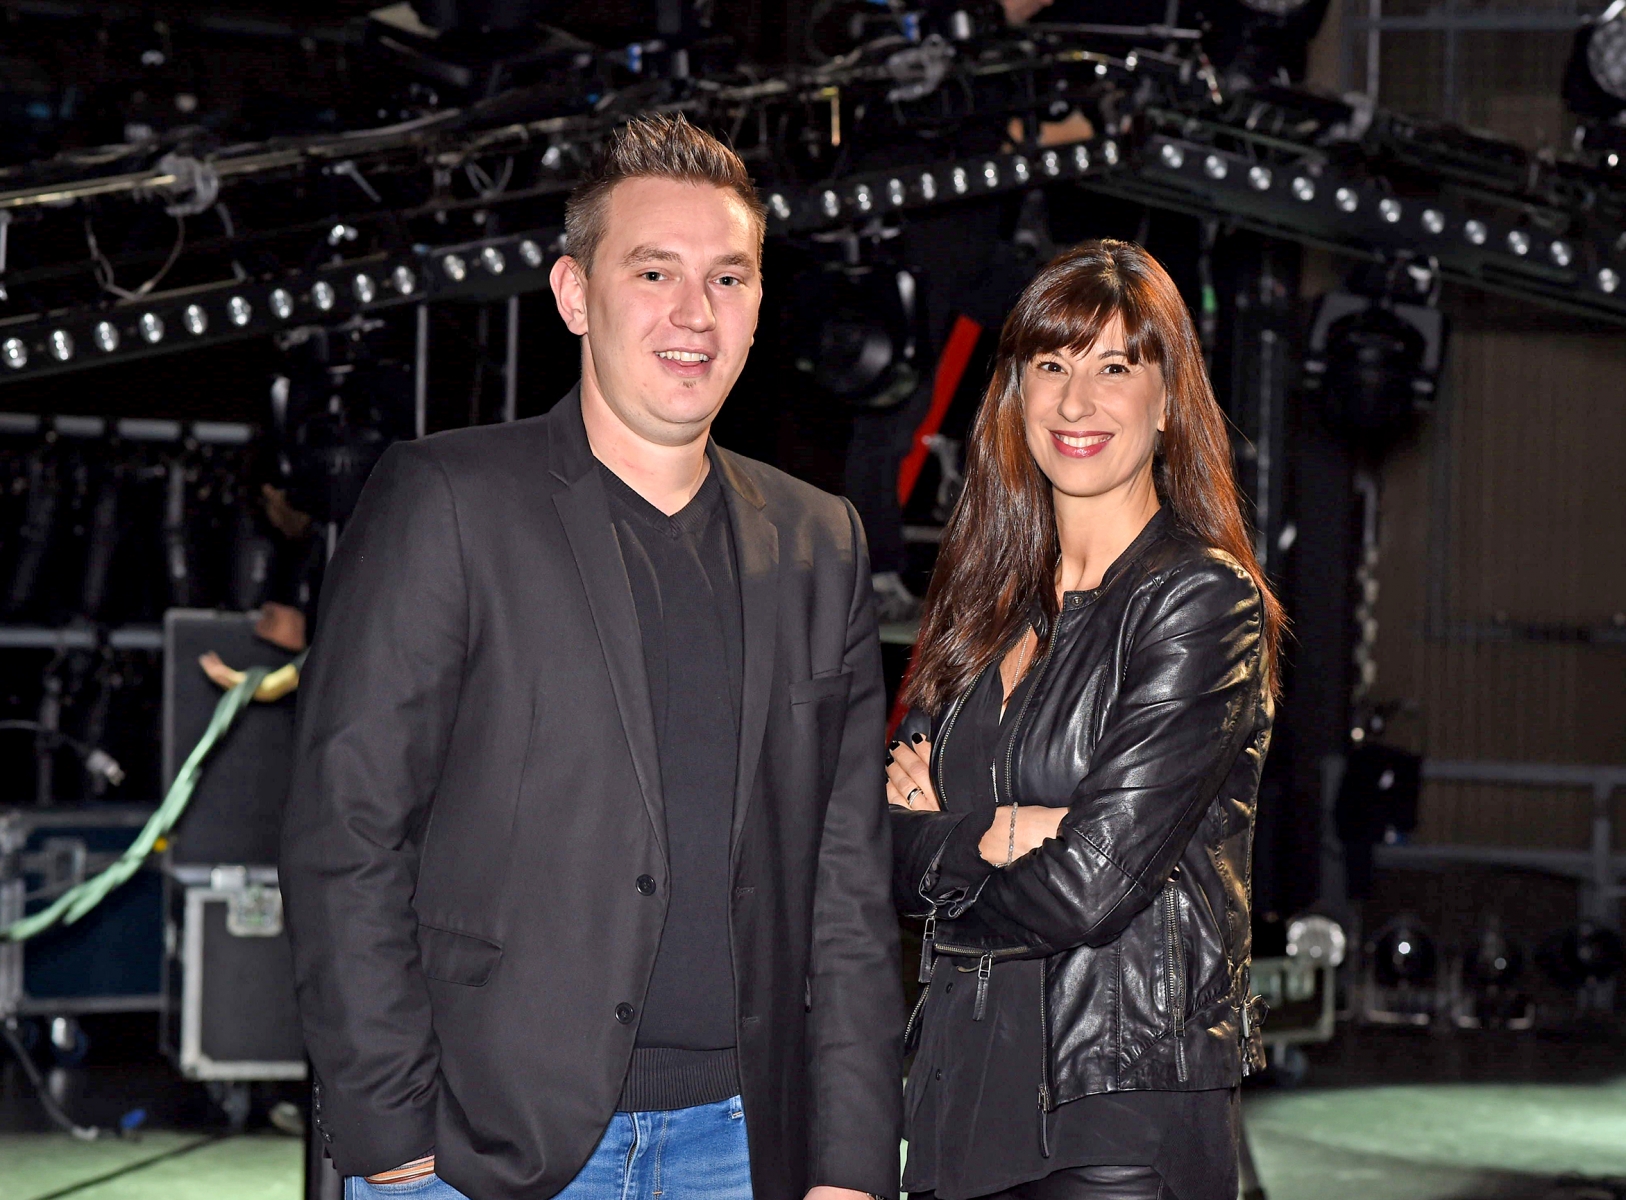 Mathieu Exhenry et Roxane Aybek, responsables de la programmation respectivement de Maxi-Rires et de Morges-sous-rire.